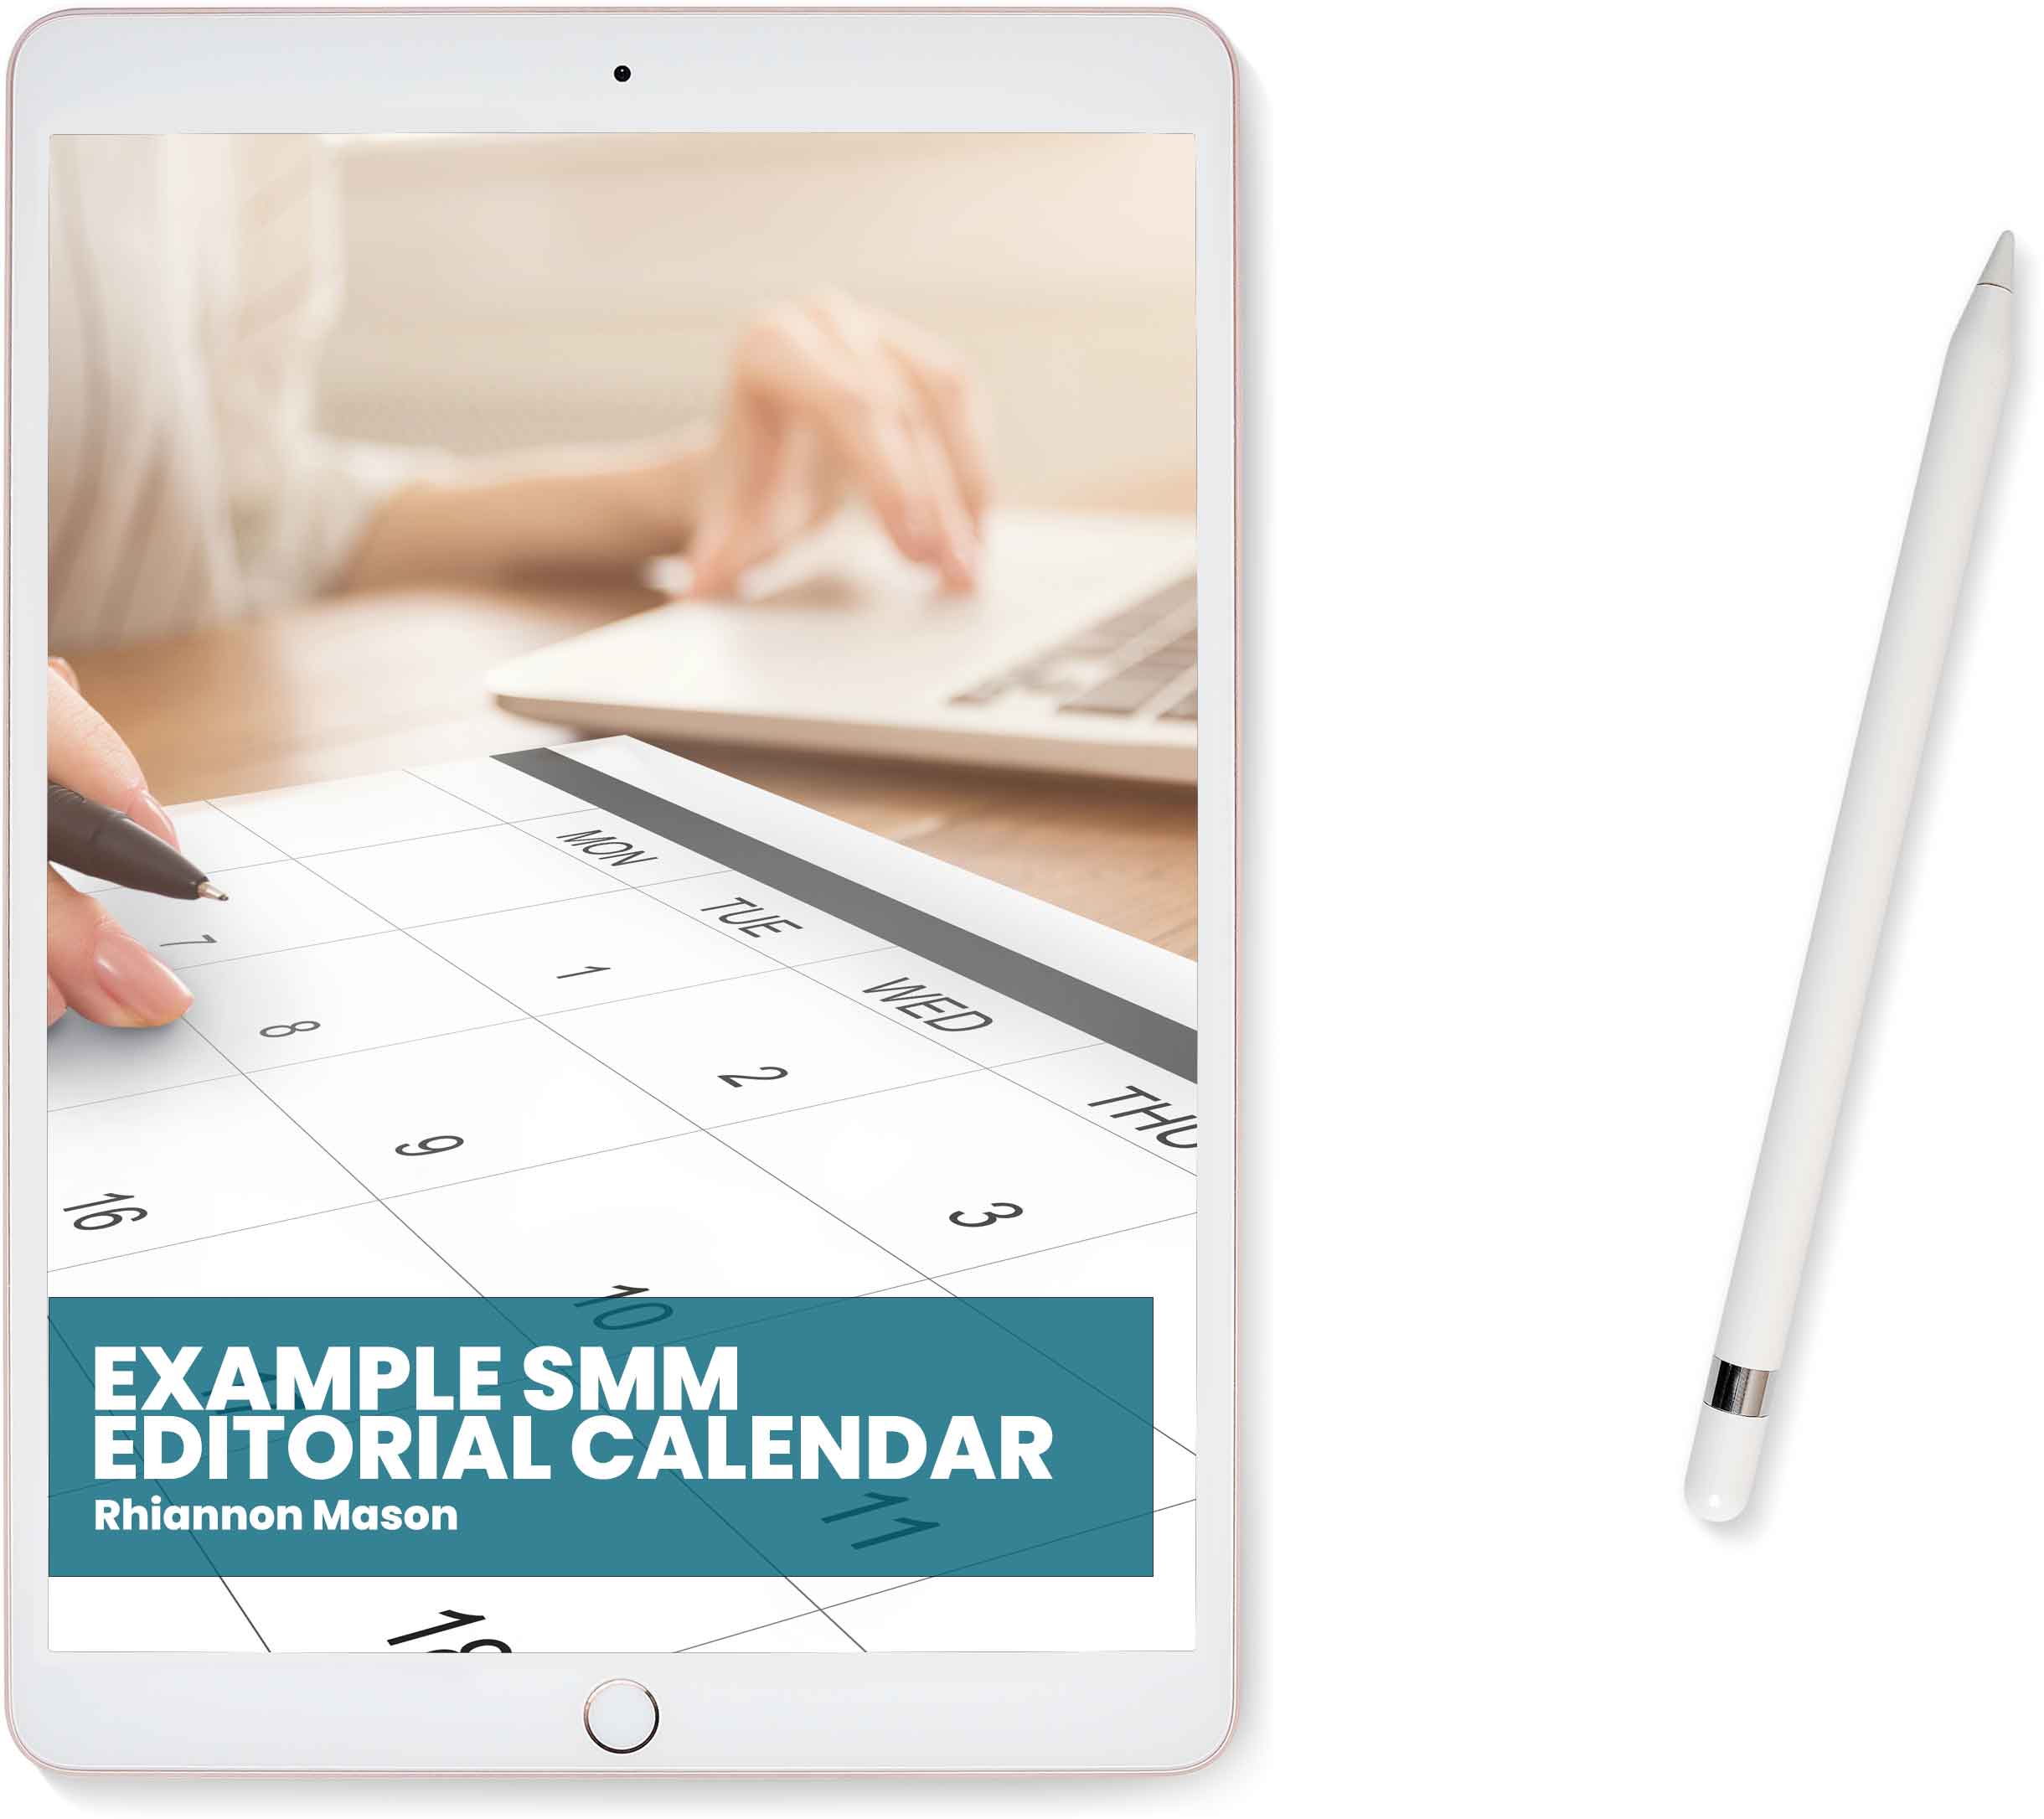 Example SMM Editorial Calendar Thumbnail